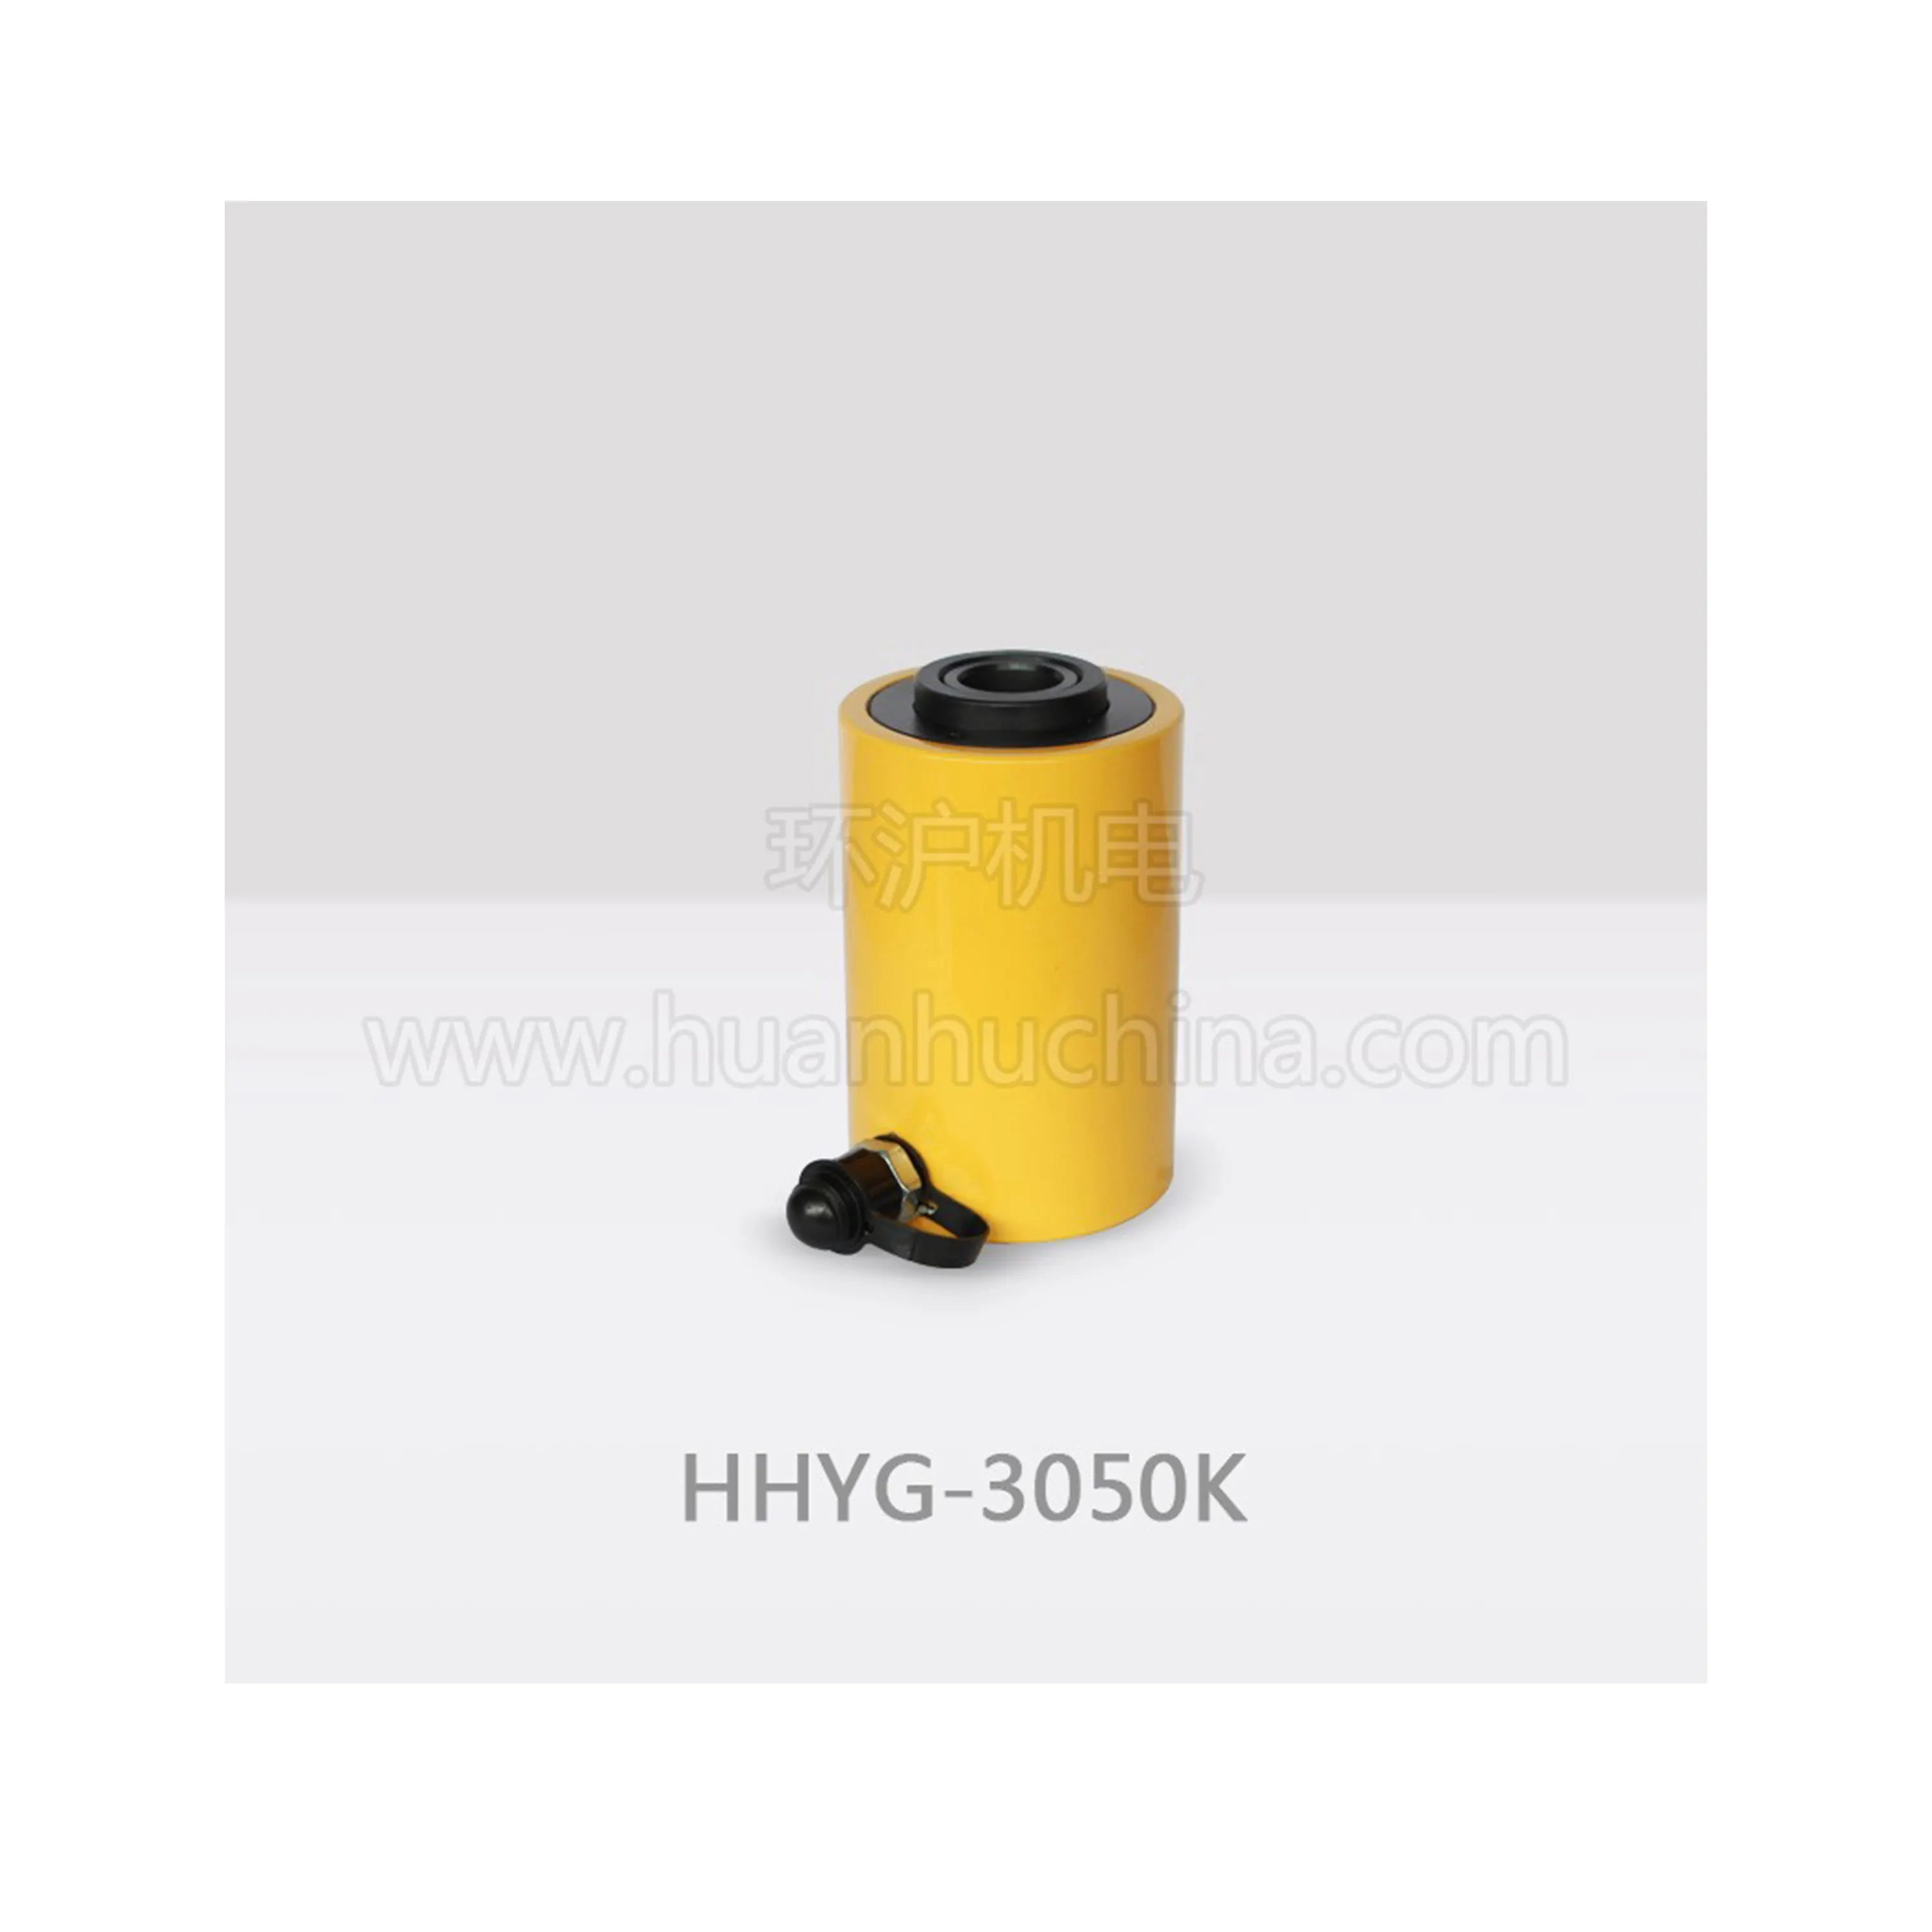 HHYG-2050K de cilindro hidráulico de acción única de émbolo hueco